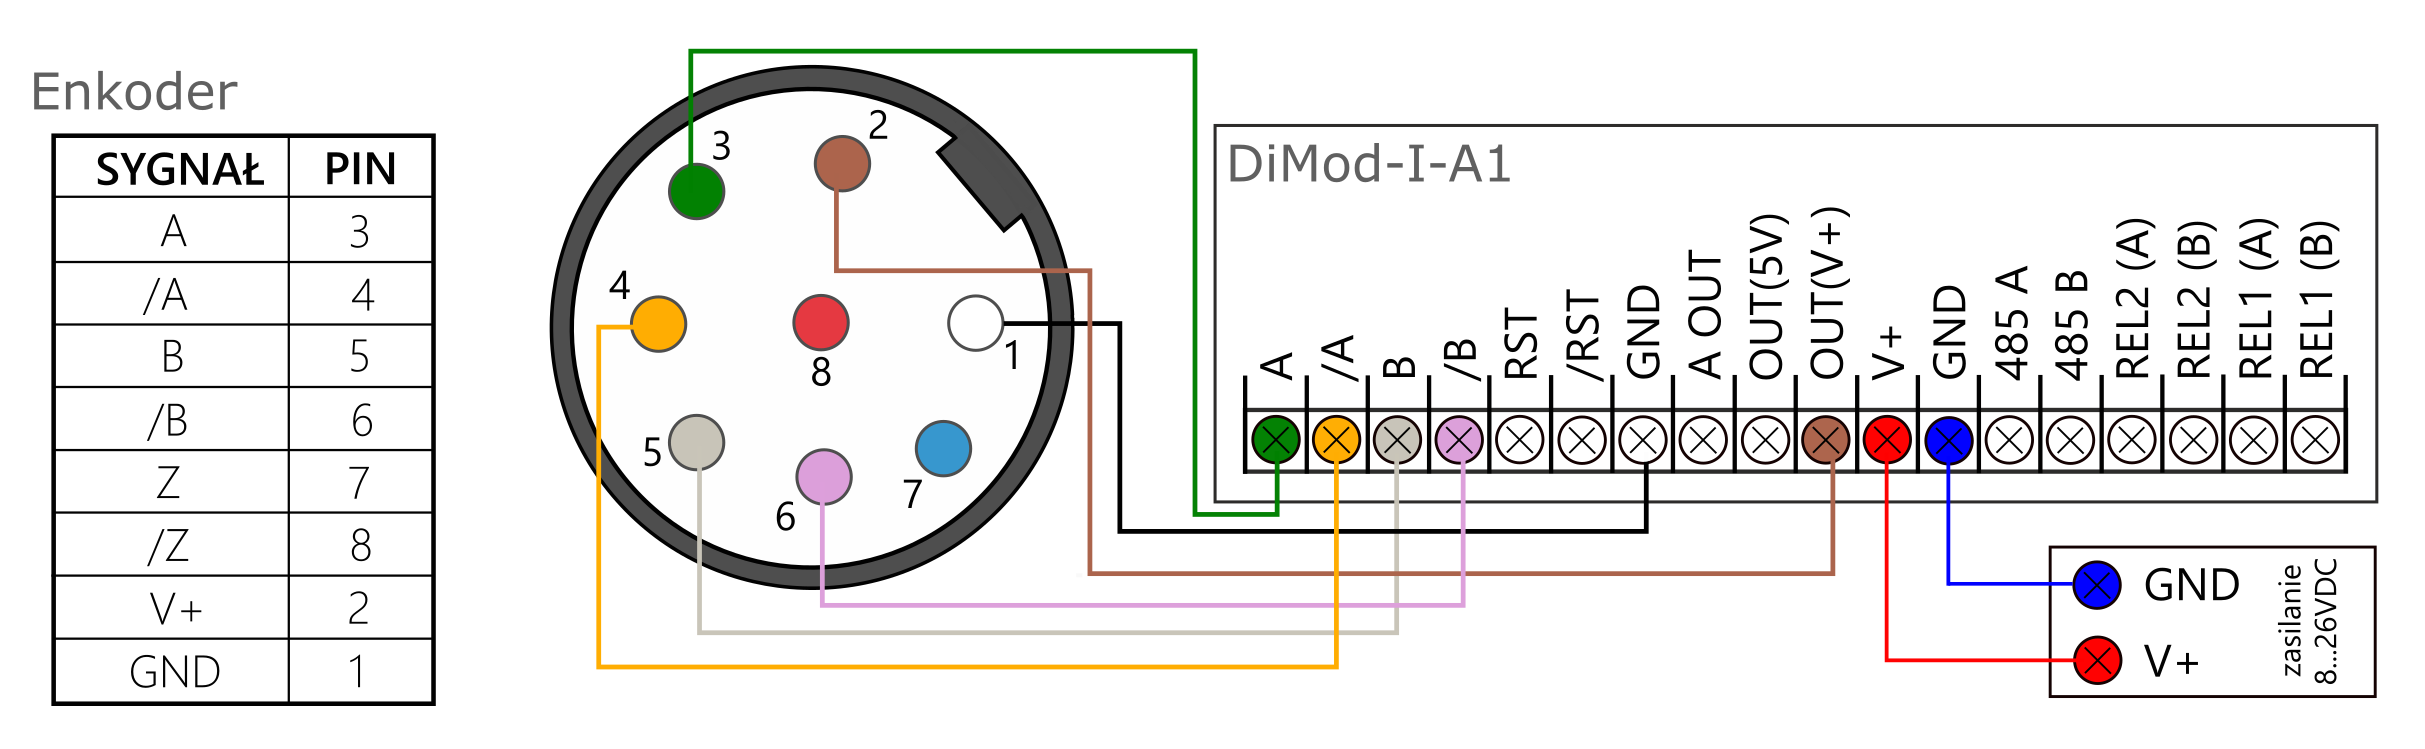 Schemat podłączeń Enkoder z DiMod-I-A1 (TTL)